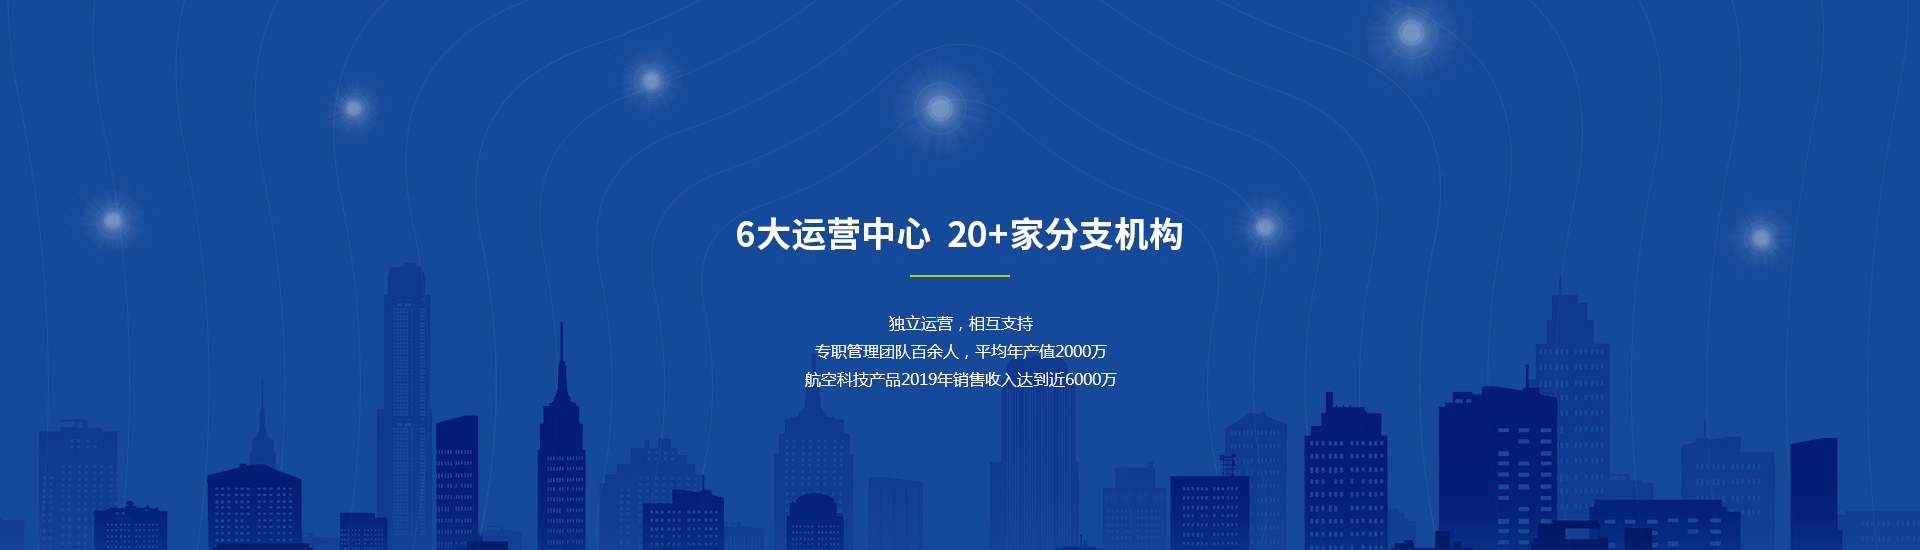 球友会·(中国)官方网站产品营销展示中心